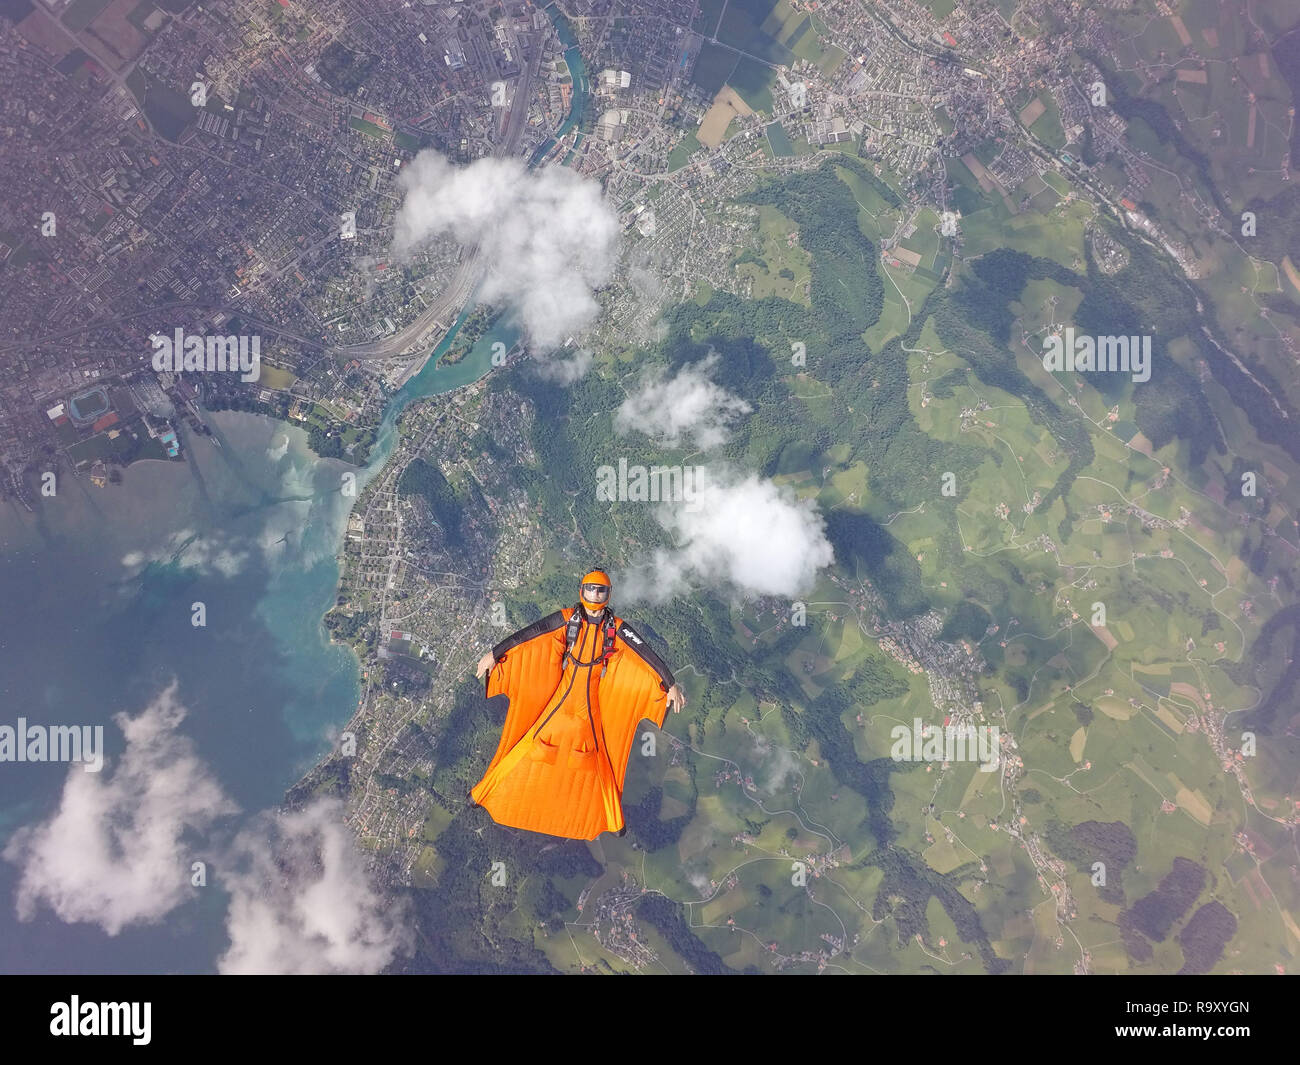 C'est pilote wingsuit flying free dans le ciel et explose pour un long moment, à son costume birdman autour des nuages. Banque D'Images